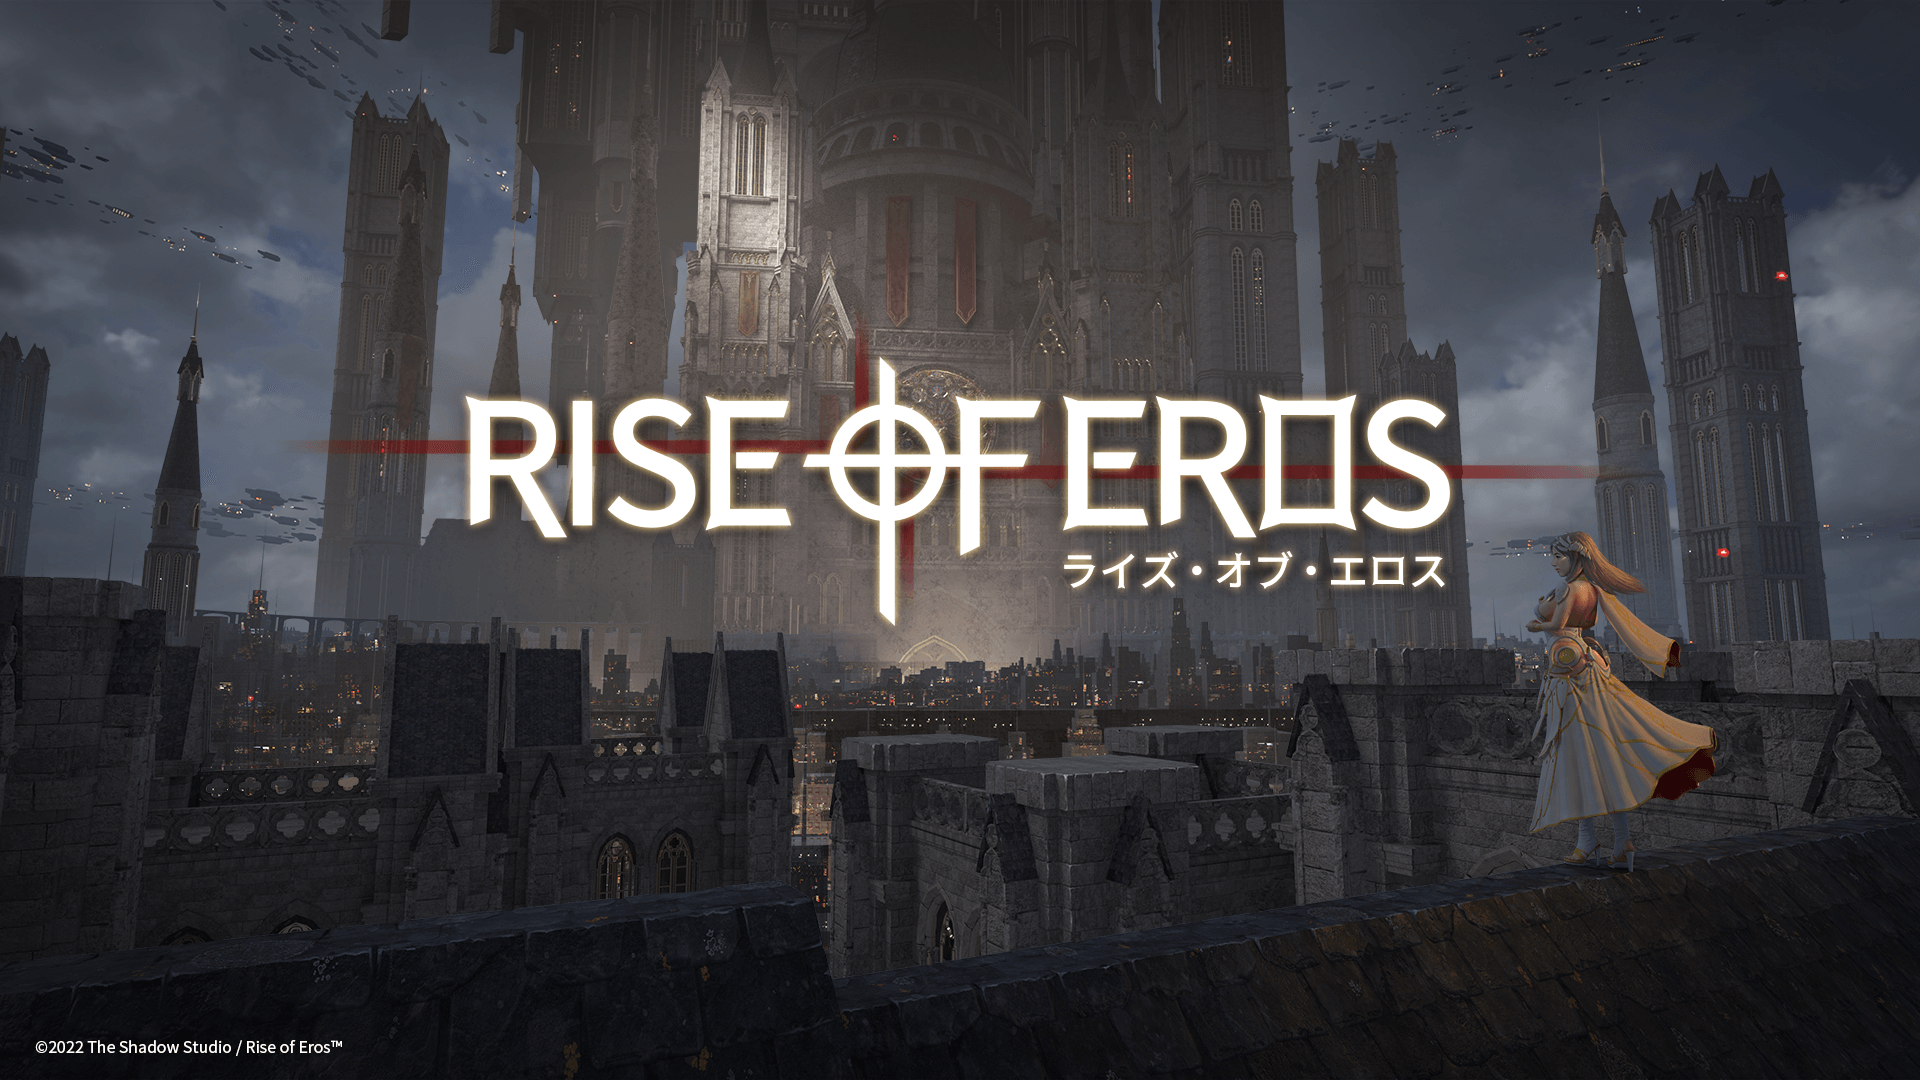 《Rise of Eros ライズ・オブ・エロス》3D神話アドベンチャー  想像を超えた華麗なる視覚体験を堪能せよ